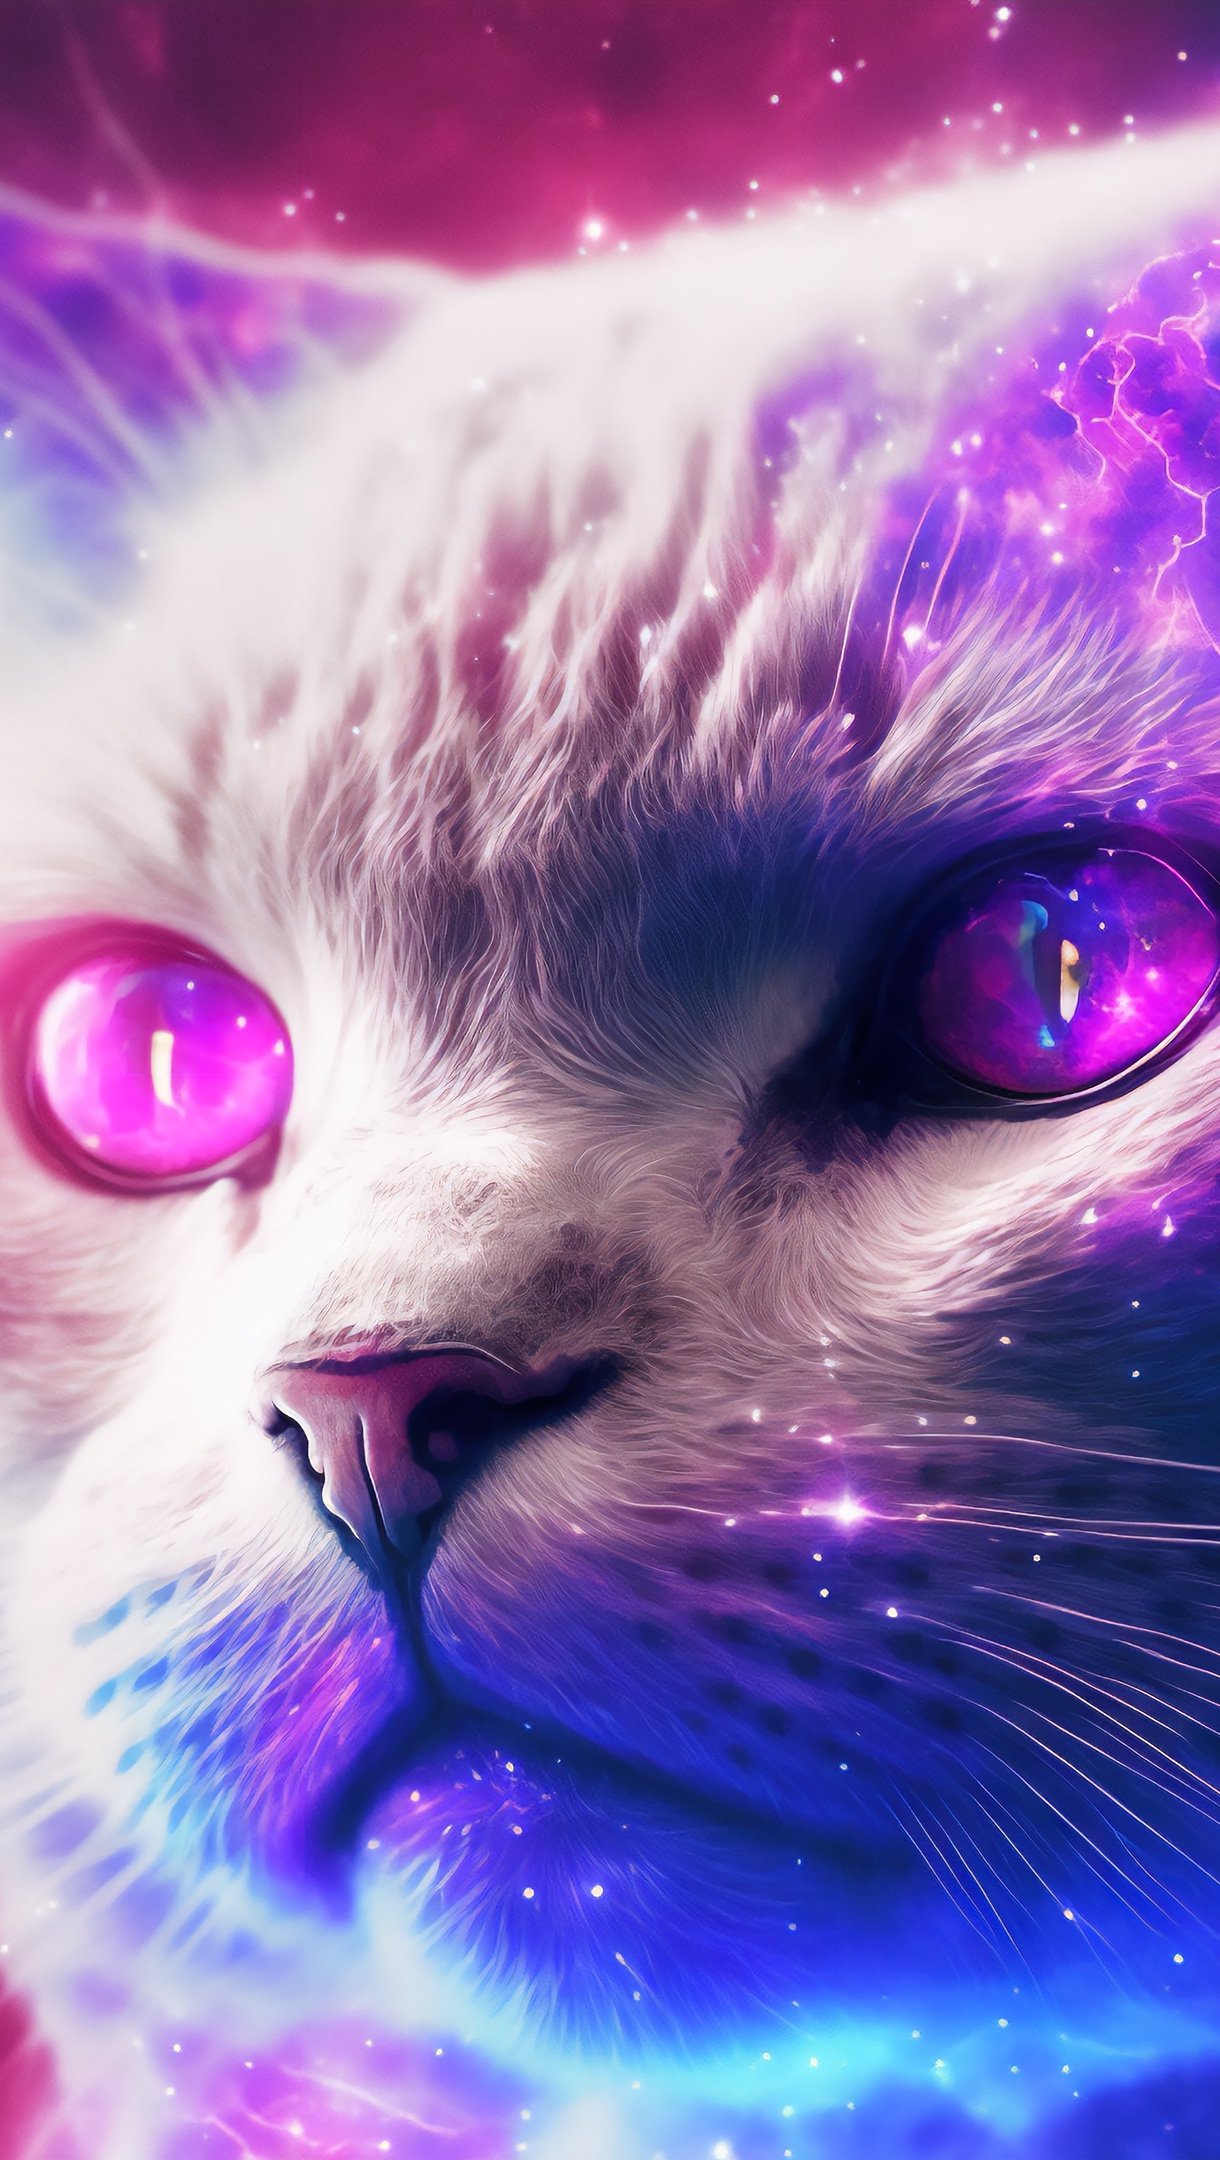 Fondos de pantalla Ilustración de gato con galaxia Vertical